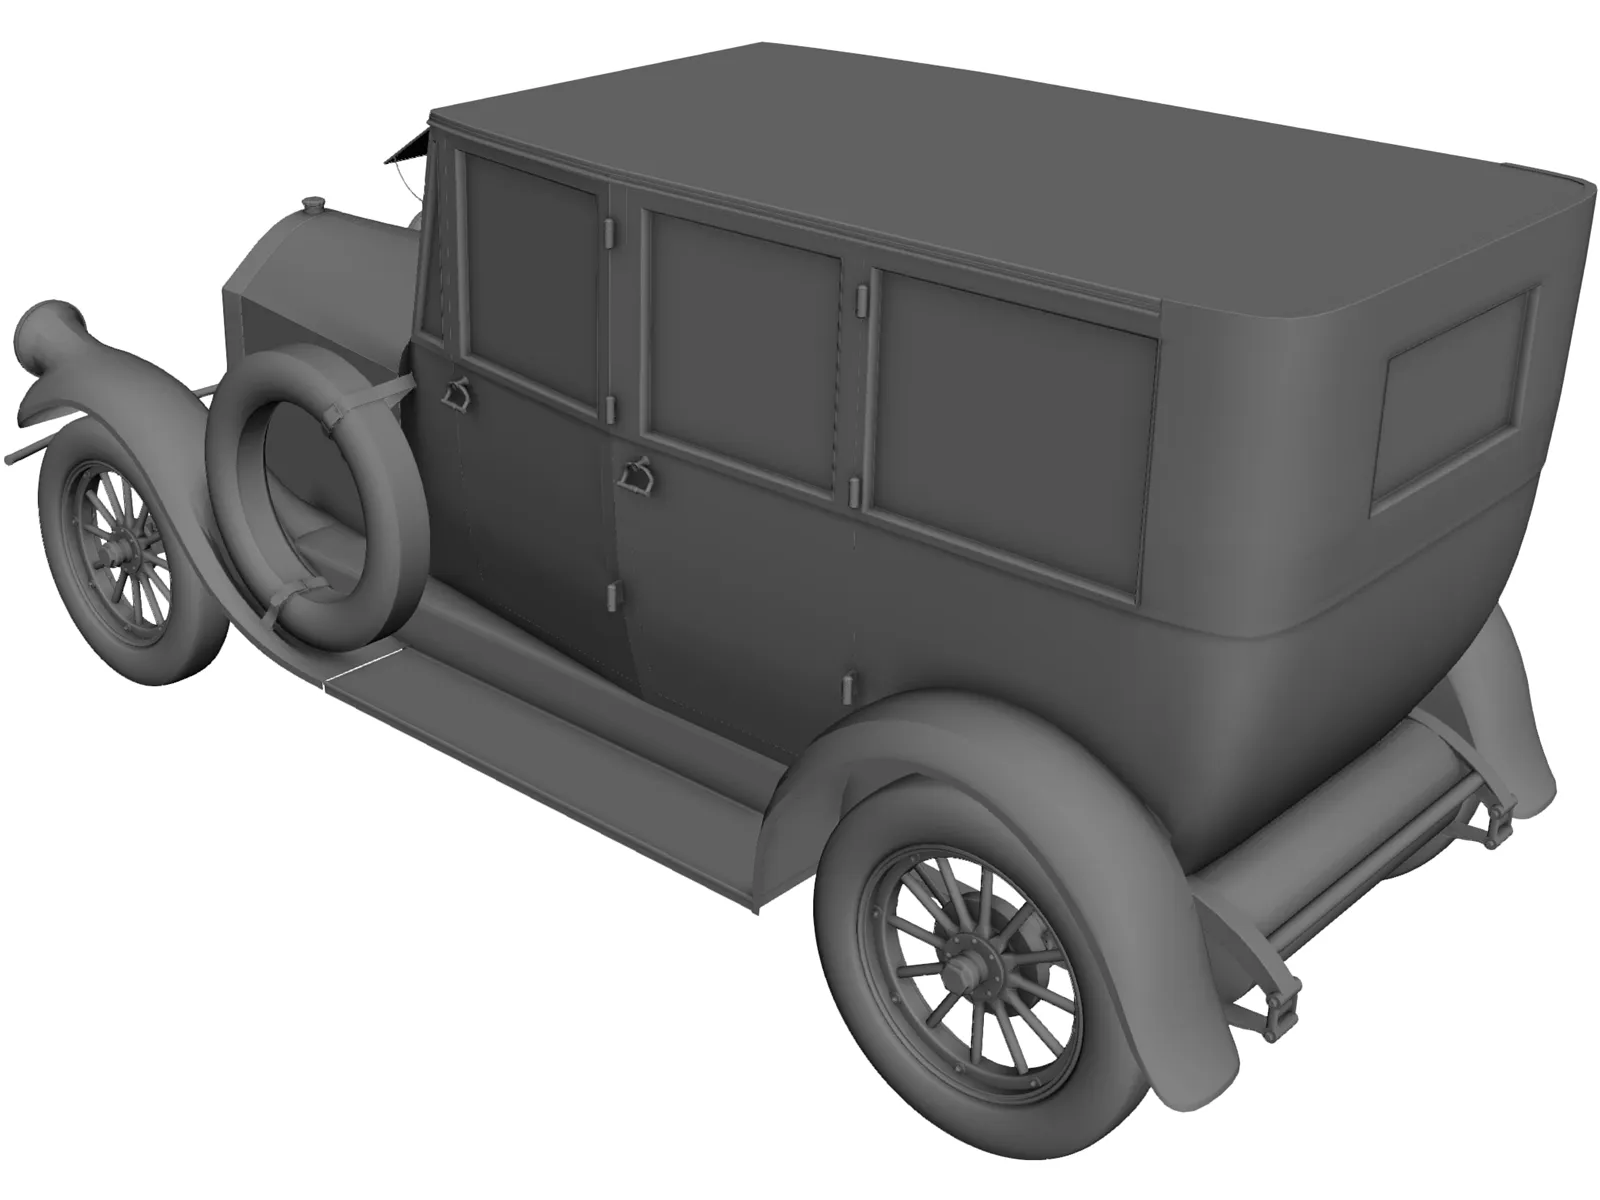 Pierce-Arrow Model 7 (1920) 3D Model